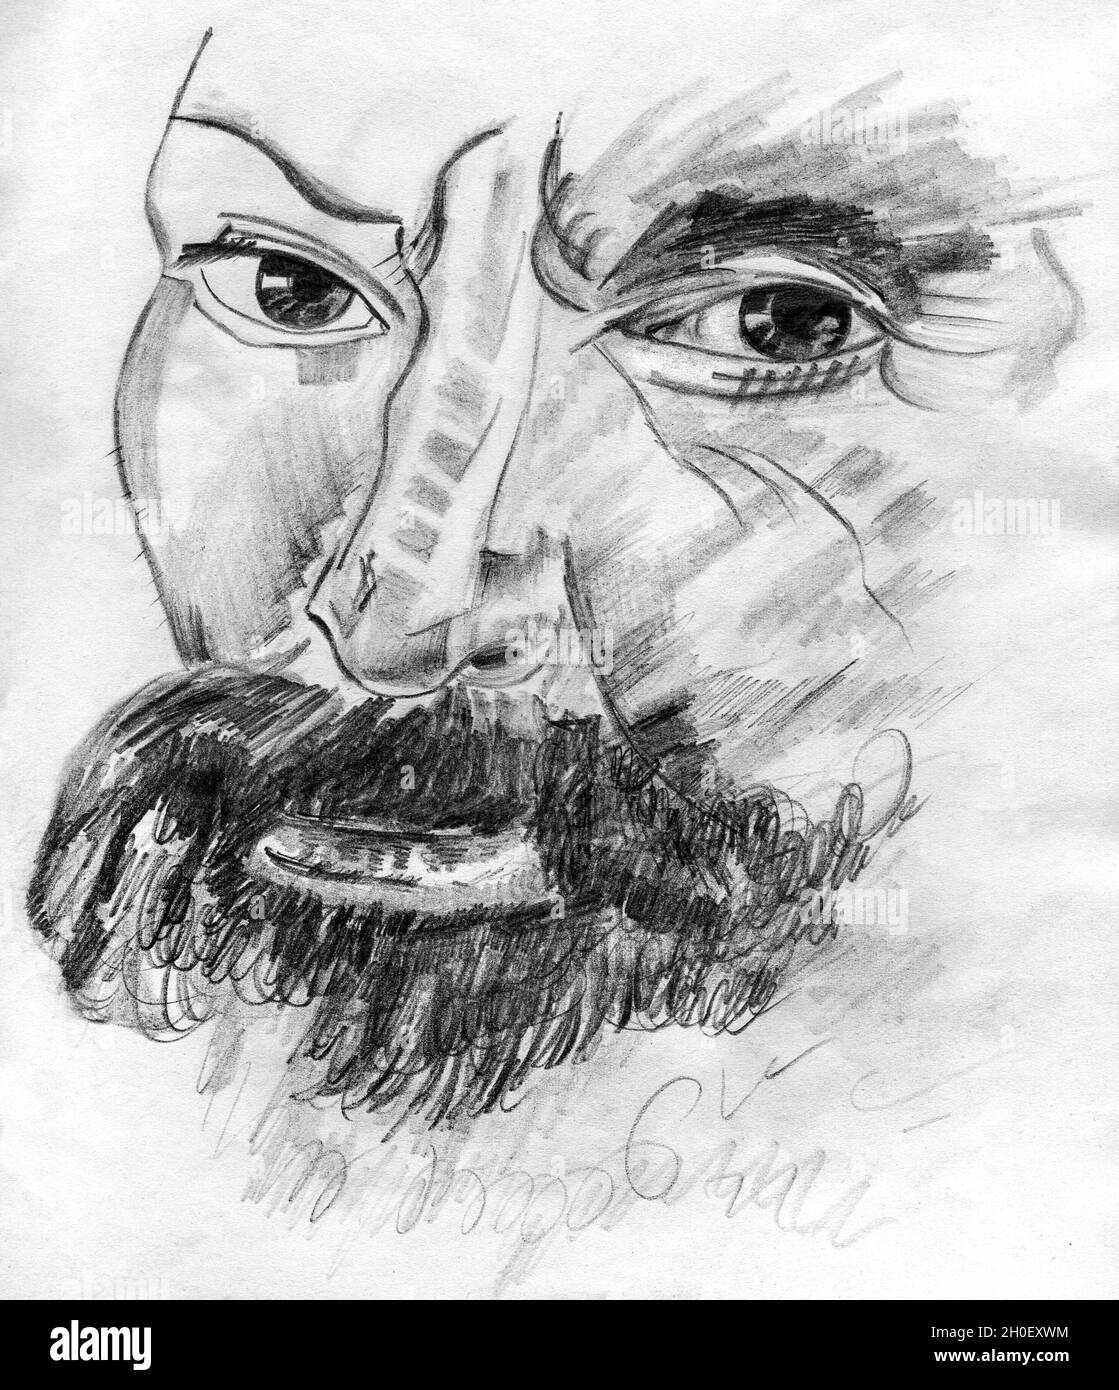 Représentation artistique de l'homme avec un visage fort et remarquable, ressemblant à l'artiste de la Renaissance Michel-Ange.Dessin au crayon. Banque D'Images